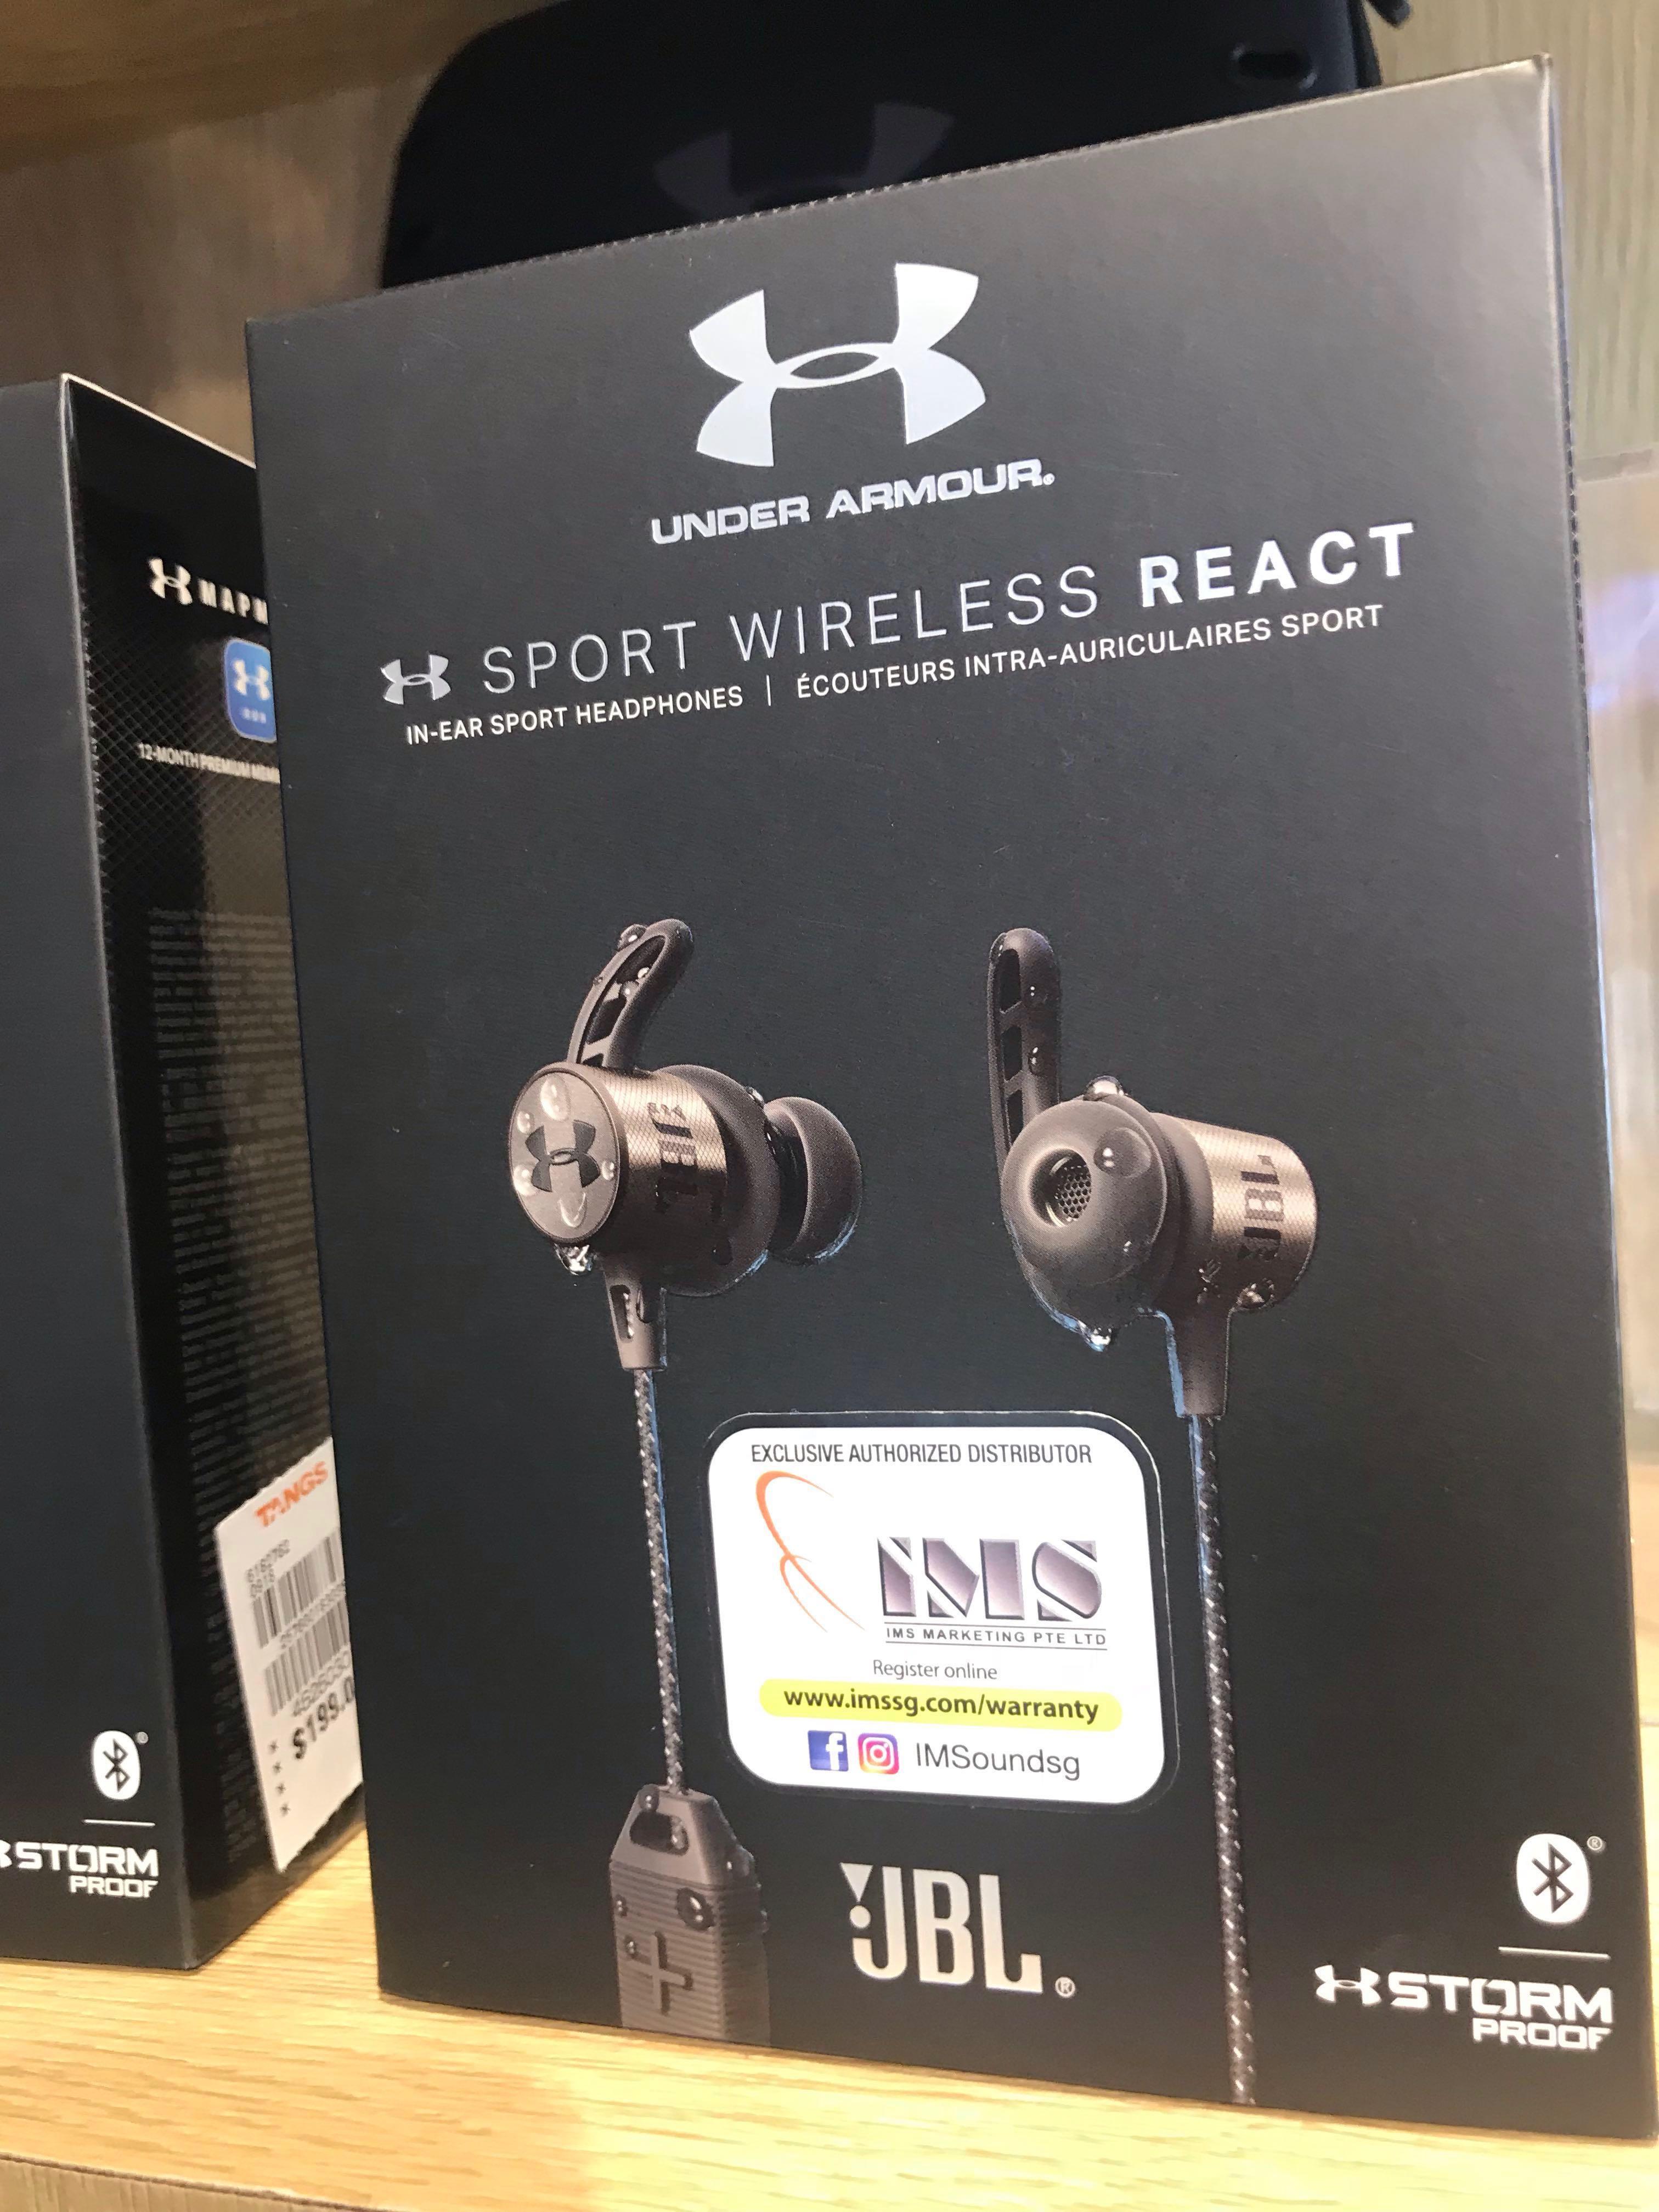 jbl sport wireless react